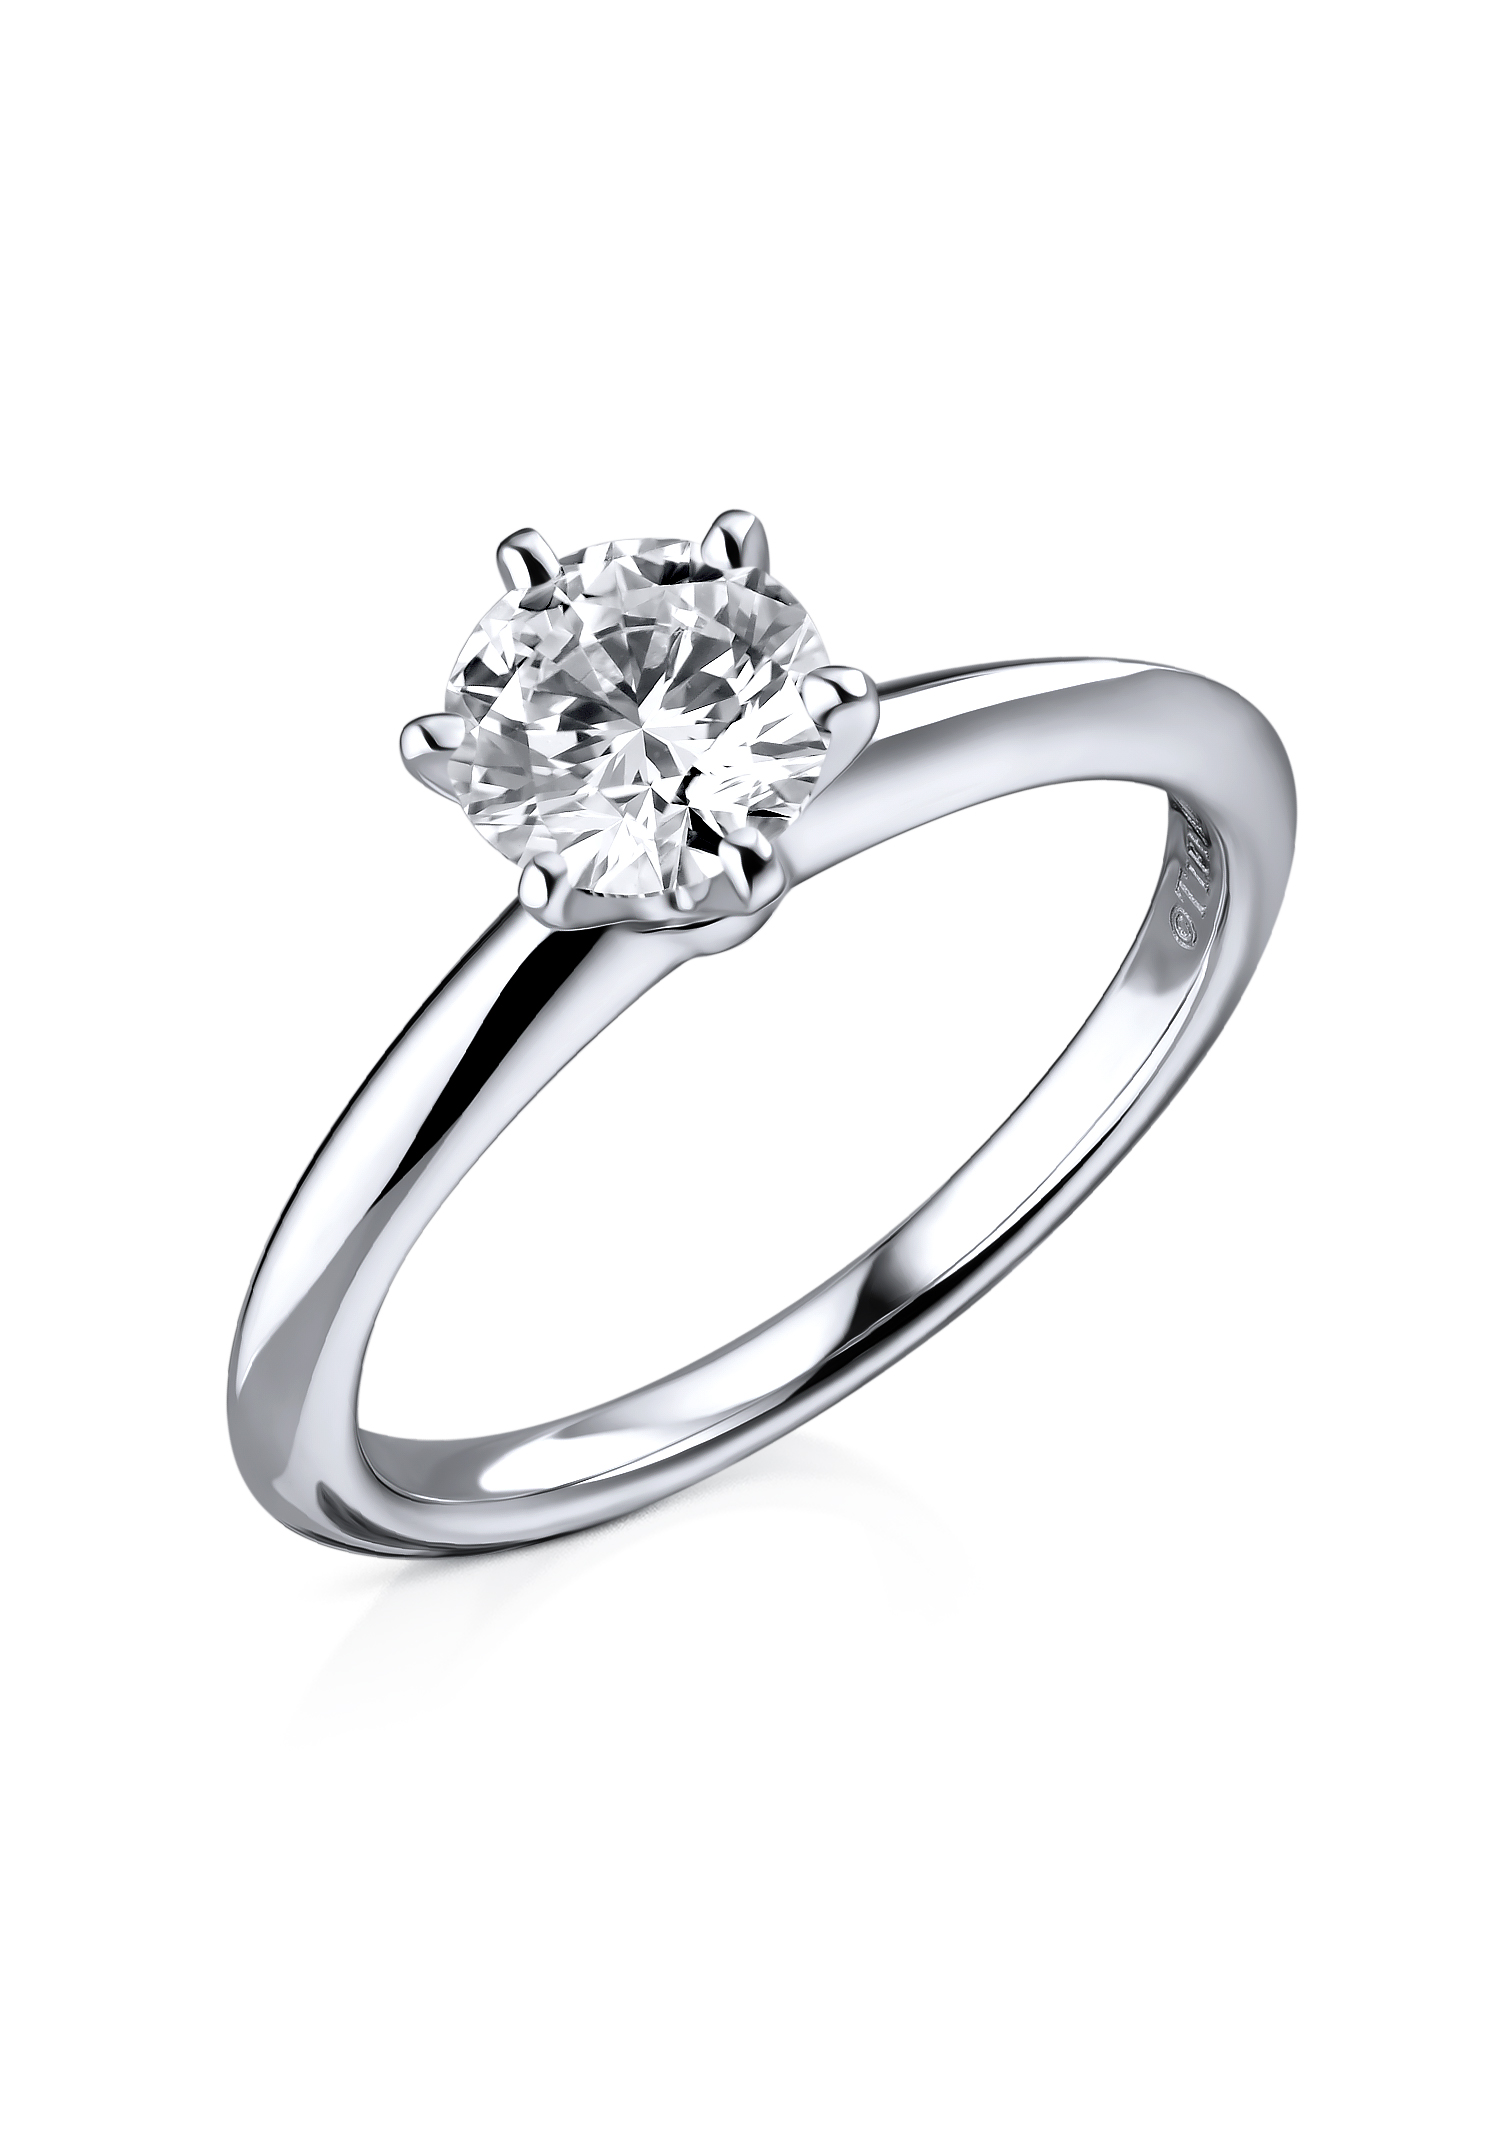 Кольцо Tiffany & Co 1,05 ct G/VS1 Ring (24279) купить в Москве, выгодная цена - ломбард на Кутузовском